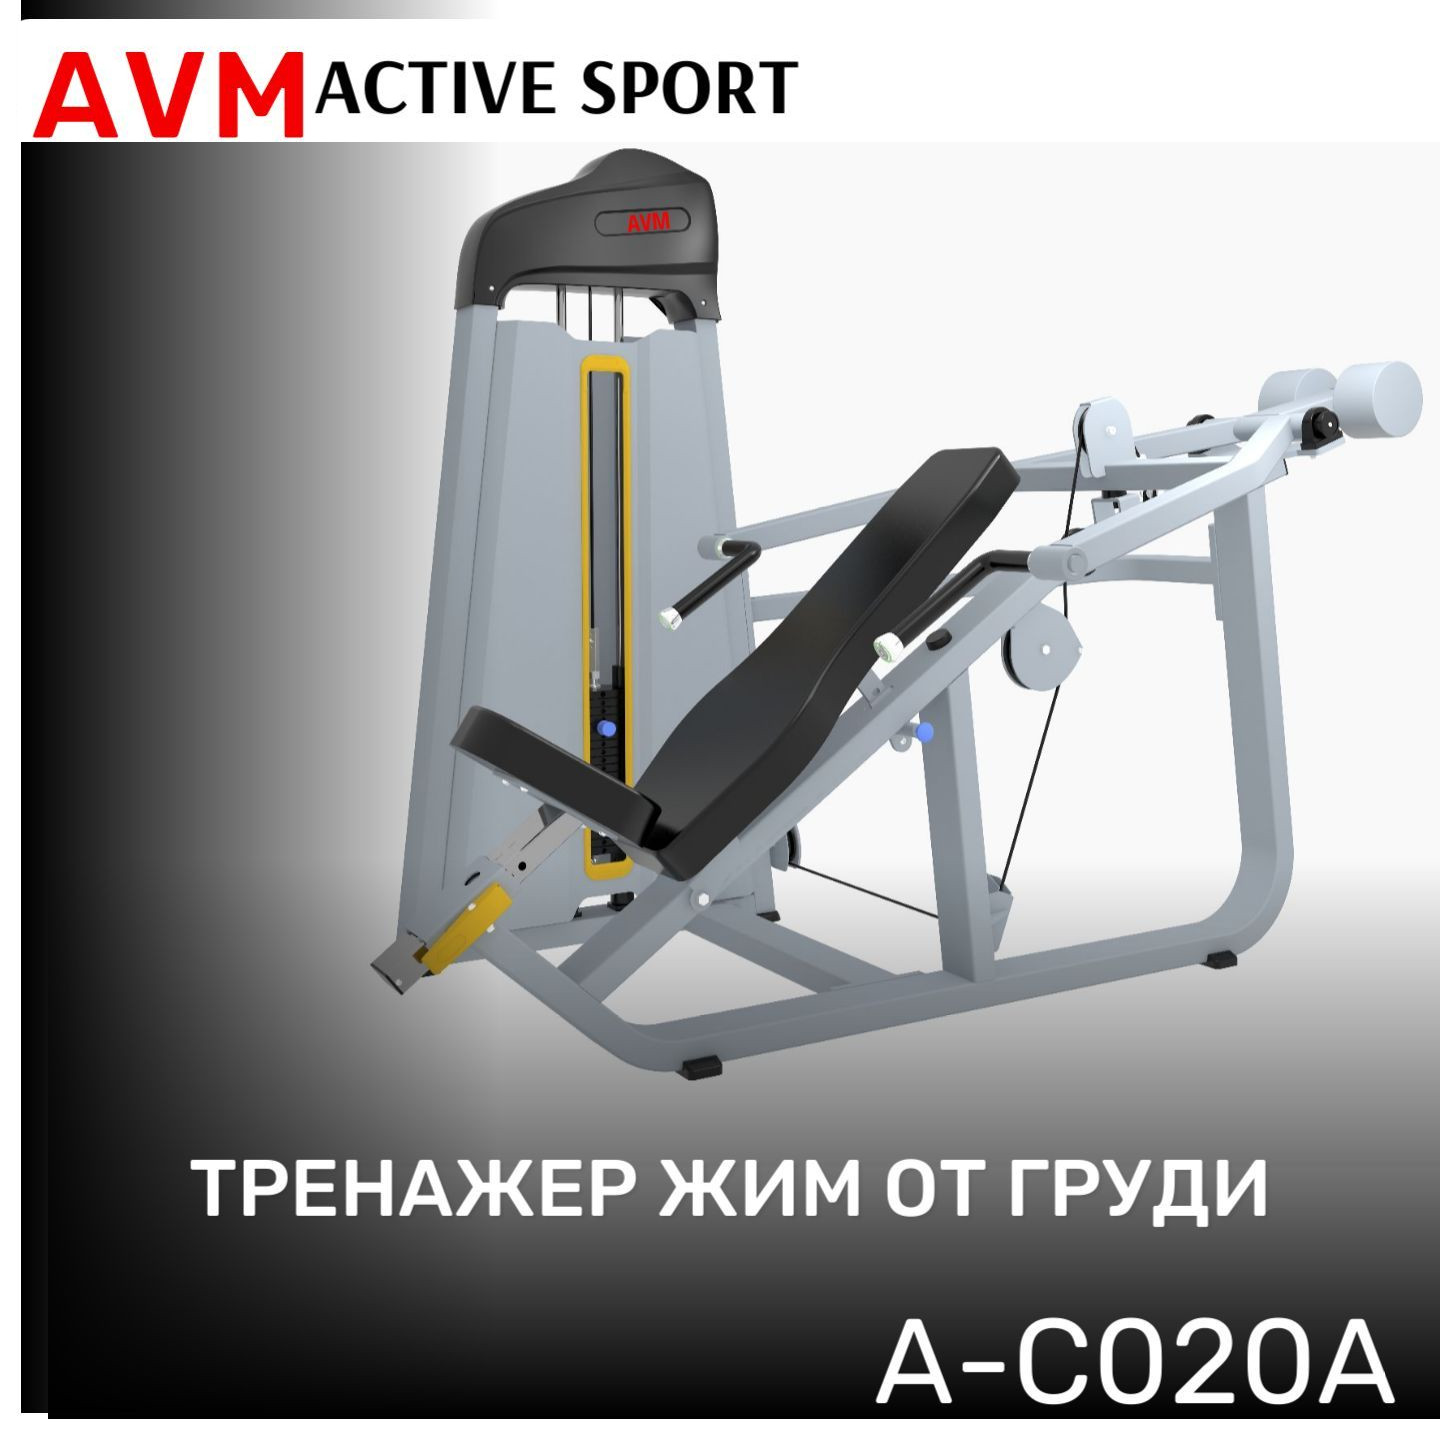 Тренажер для зала AVM A-C020A жим от груди профессиональный силовой